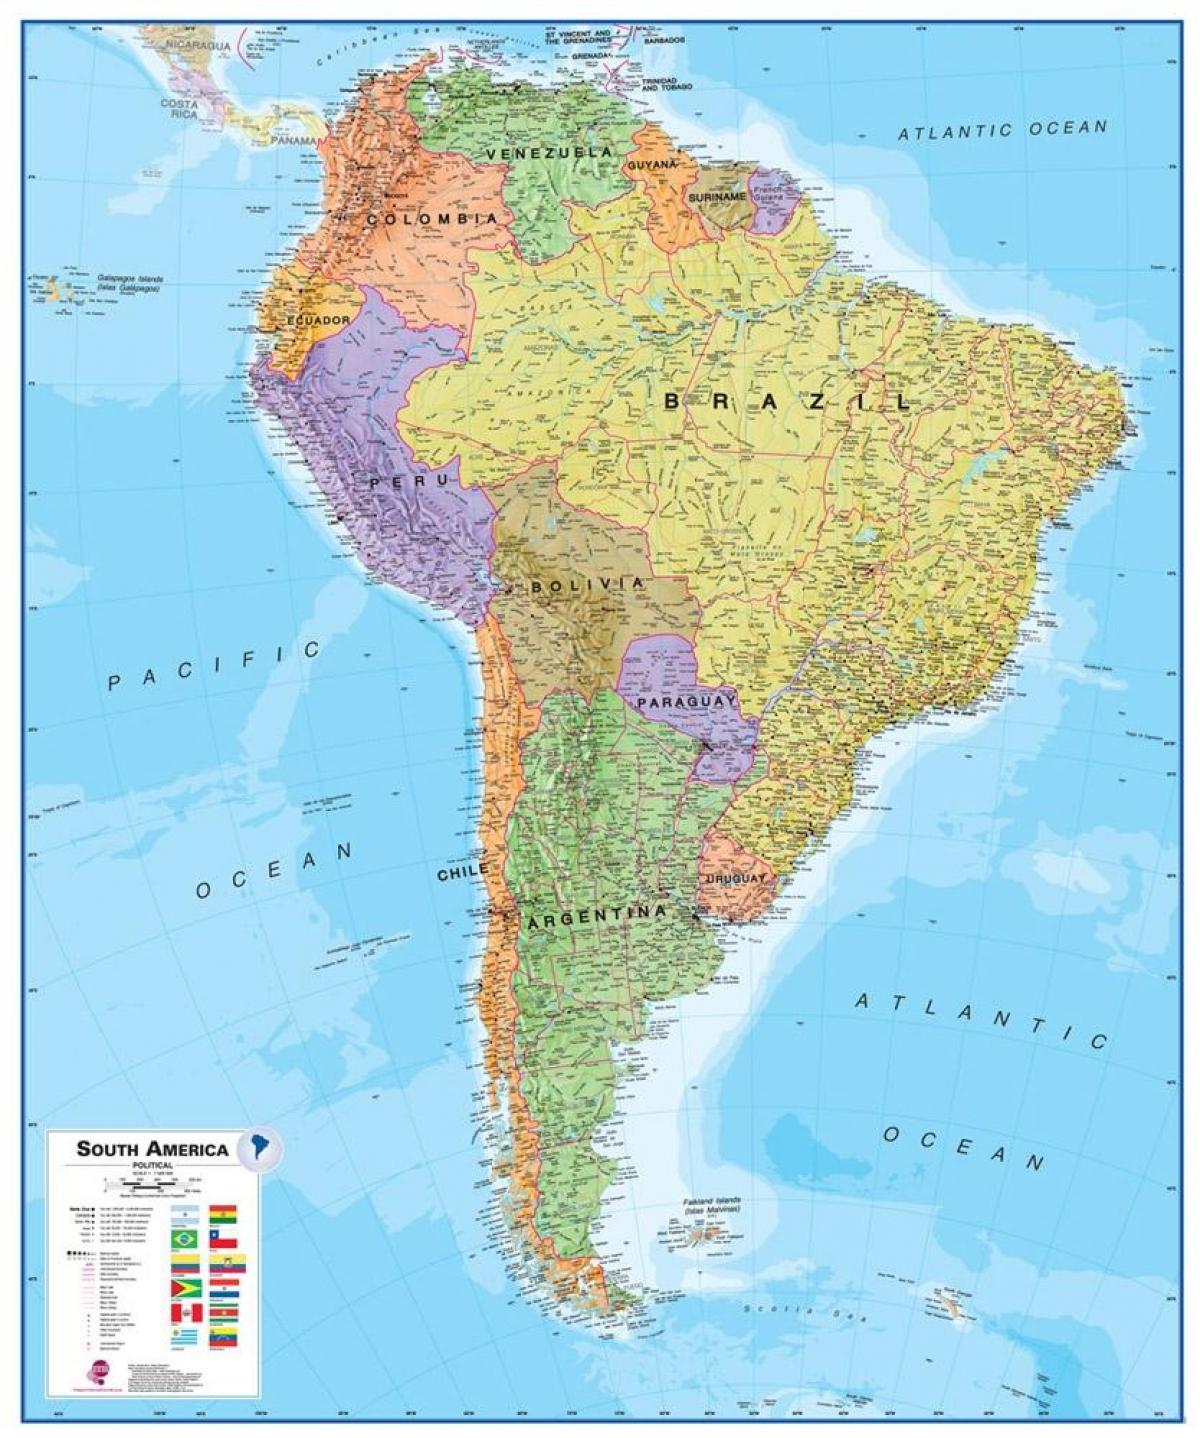 რუკა პერუს სამხრეთ ამერიკა